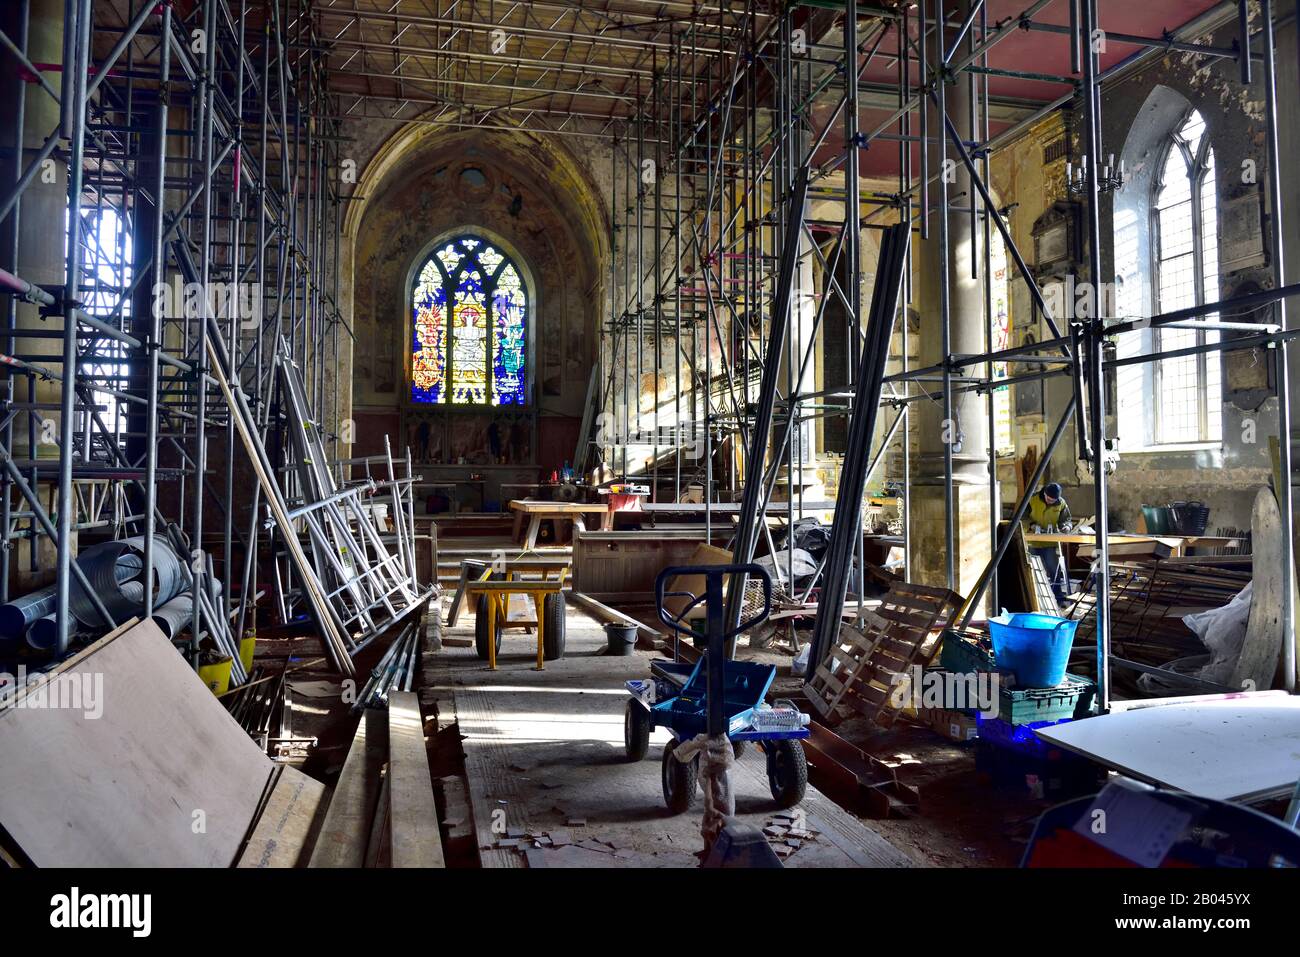 Site de restauration avec échafaudage intérieur et outils dans l'ancien bâtiment endommagé de l'église endommagé par le feu en cours de réaffectation, Angleterre, Royaume-Uni, Banque D'Images